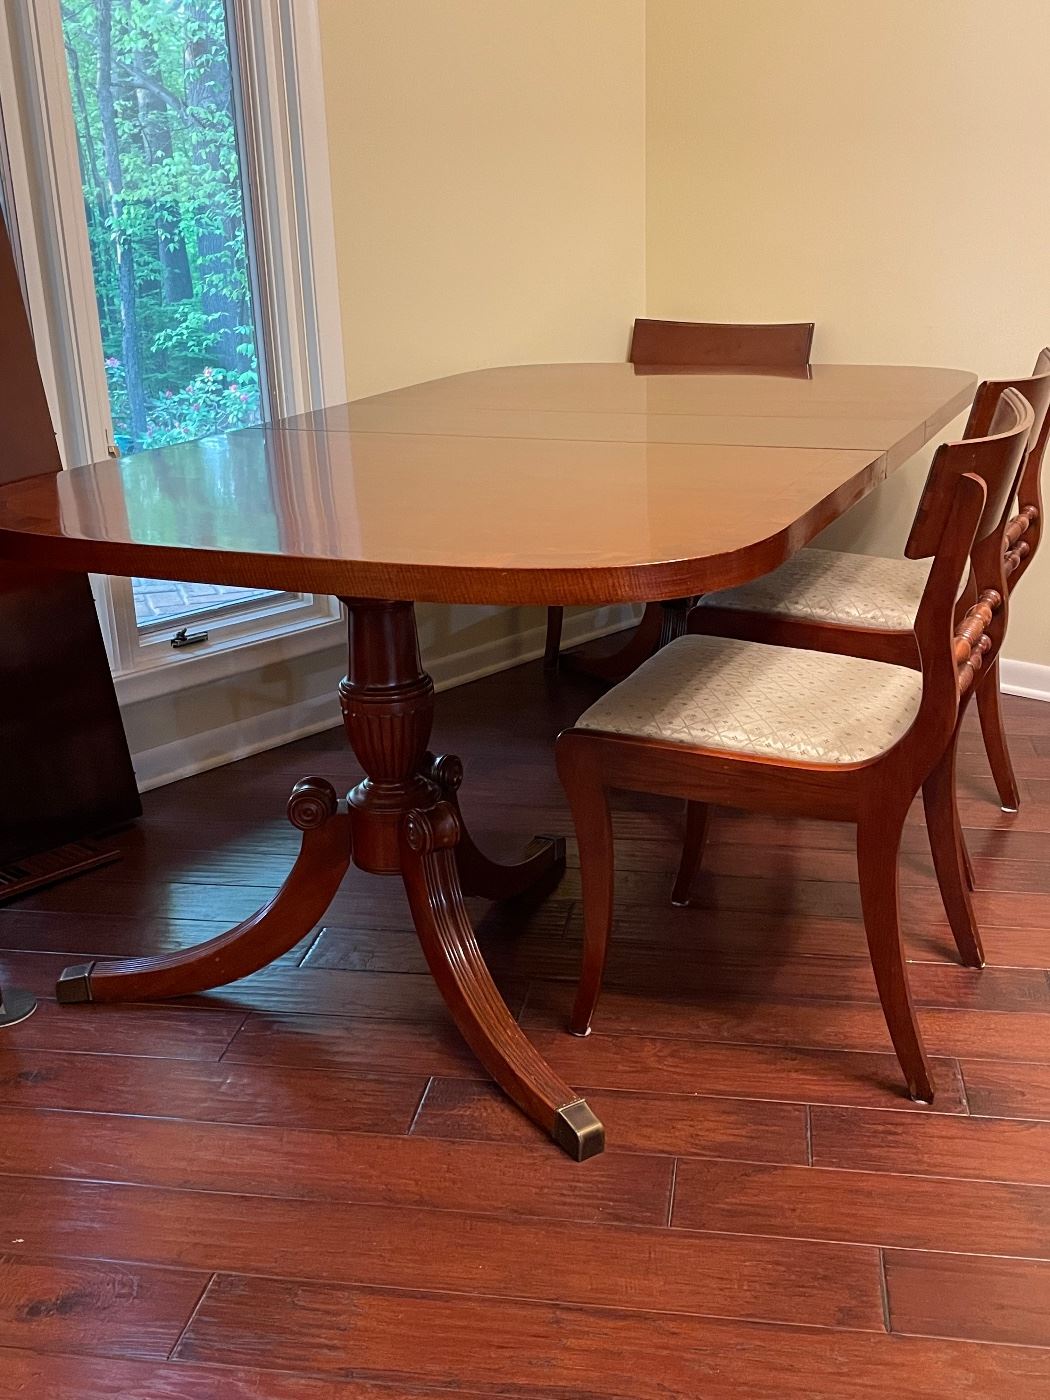 Mahogany dining room table 